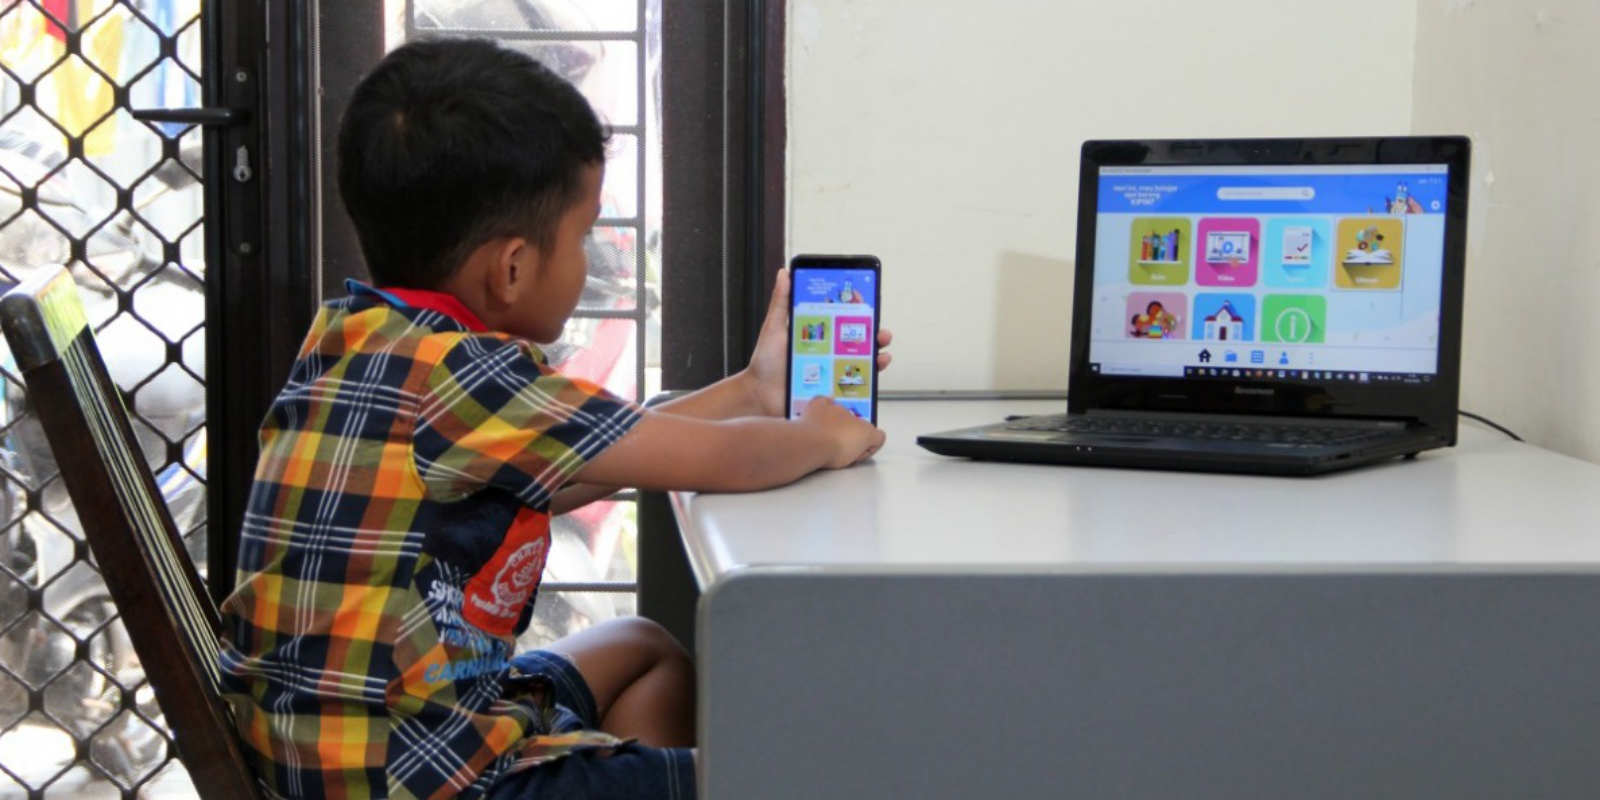 Pemprov DKI Jakarta Tetap Berlakukan Belajar dari Rumah untuk Seluruh Sekolah pada Semester Genap Tahun Ajaran 2020/2021 1